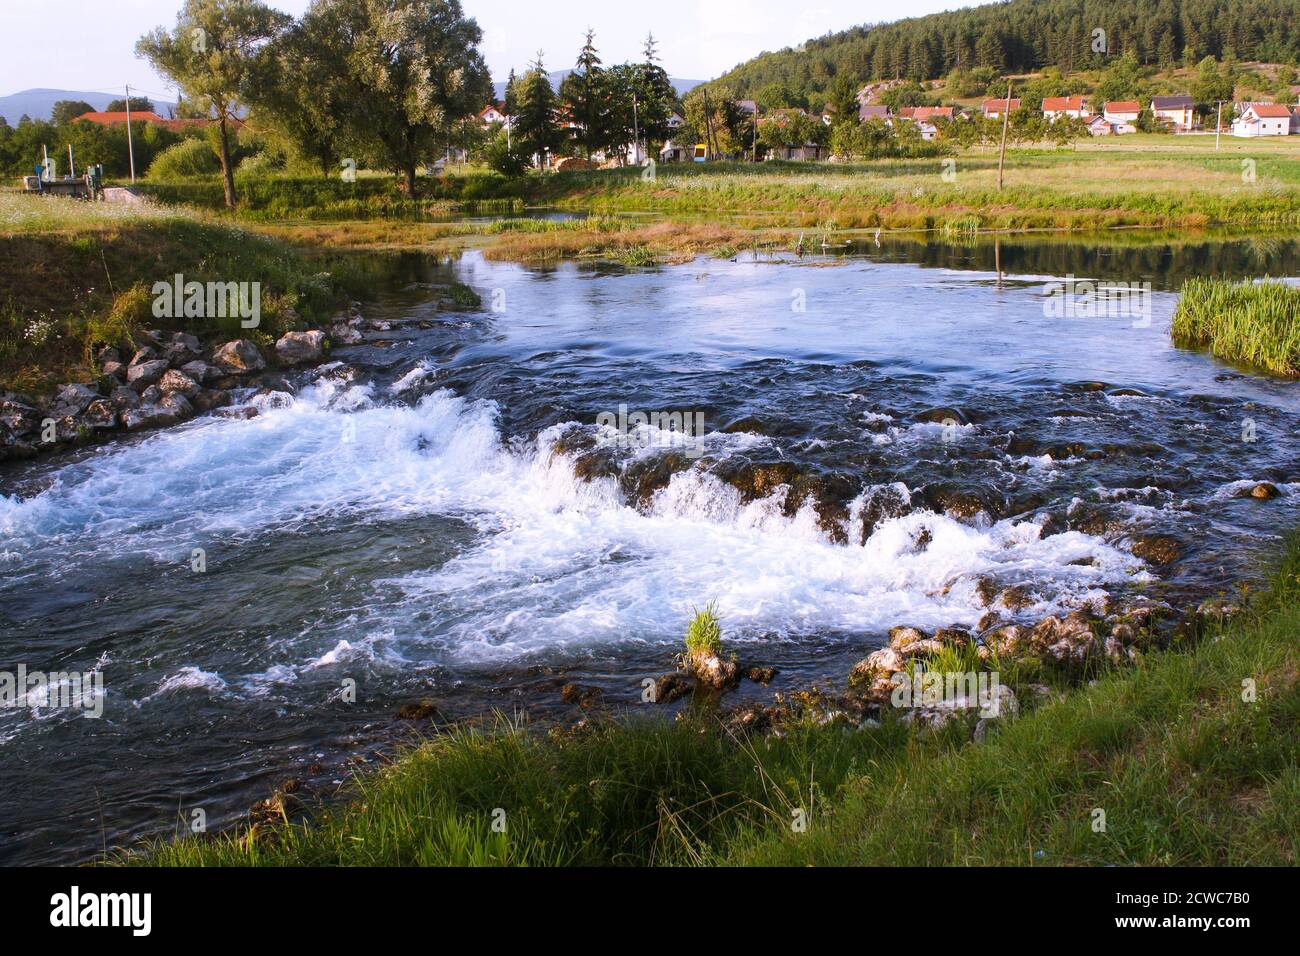 Belle rivière Gacka coulant entre arbres et champs, vue d'été, la région de Lika de Croatie Banque D'Images